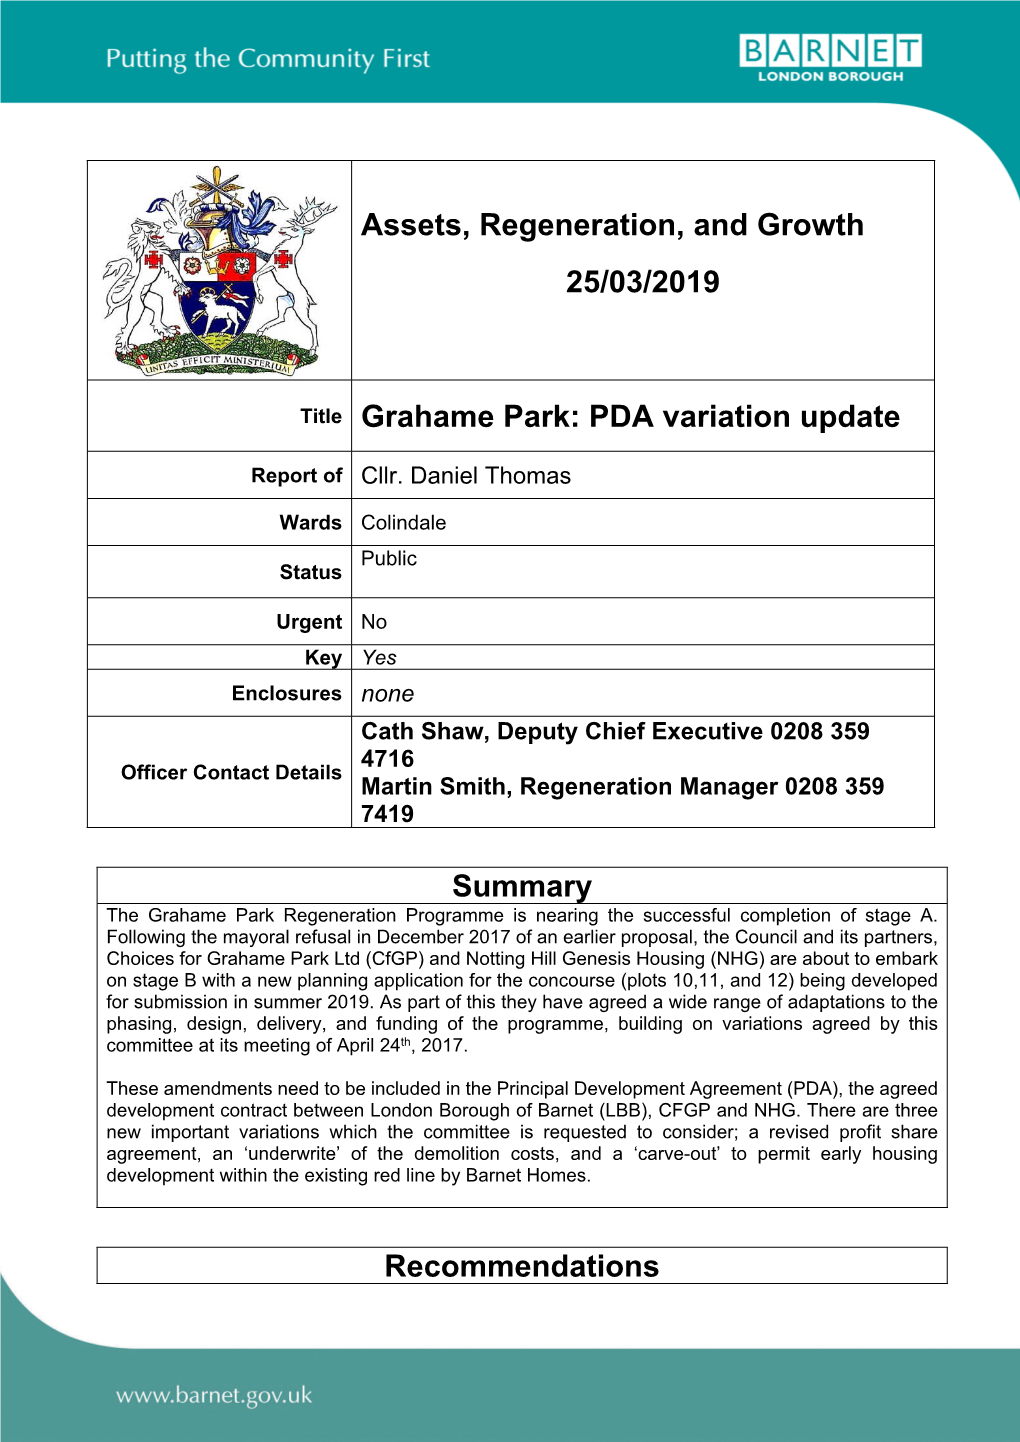 Grahame Park: PDA Variation Update